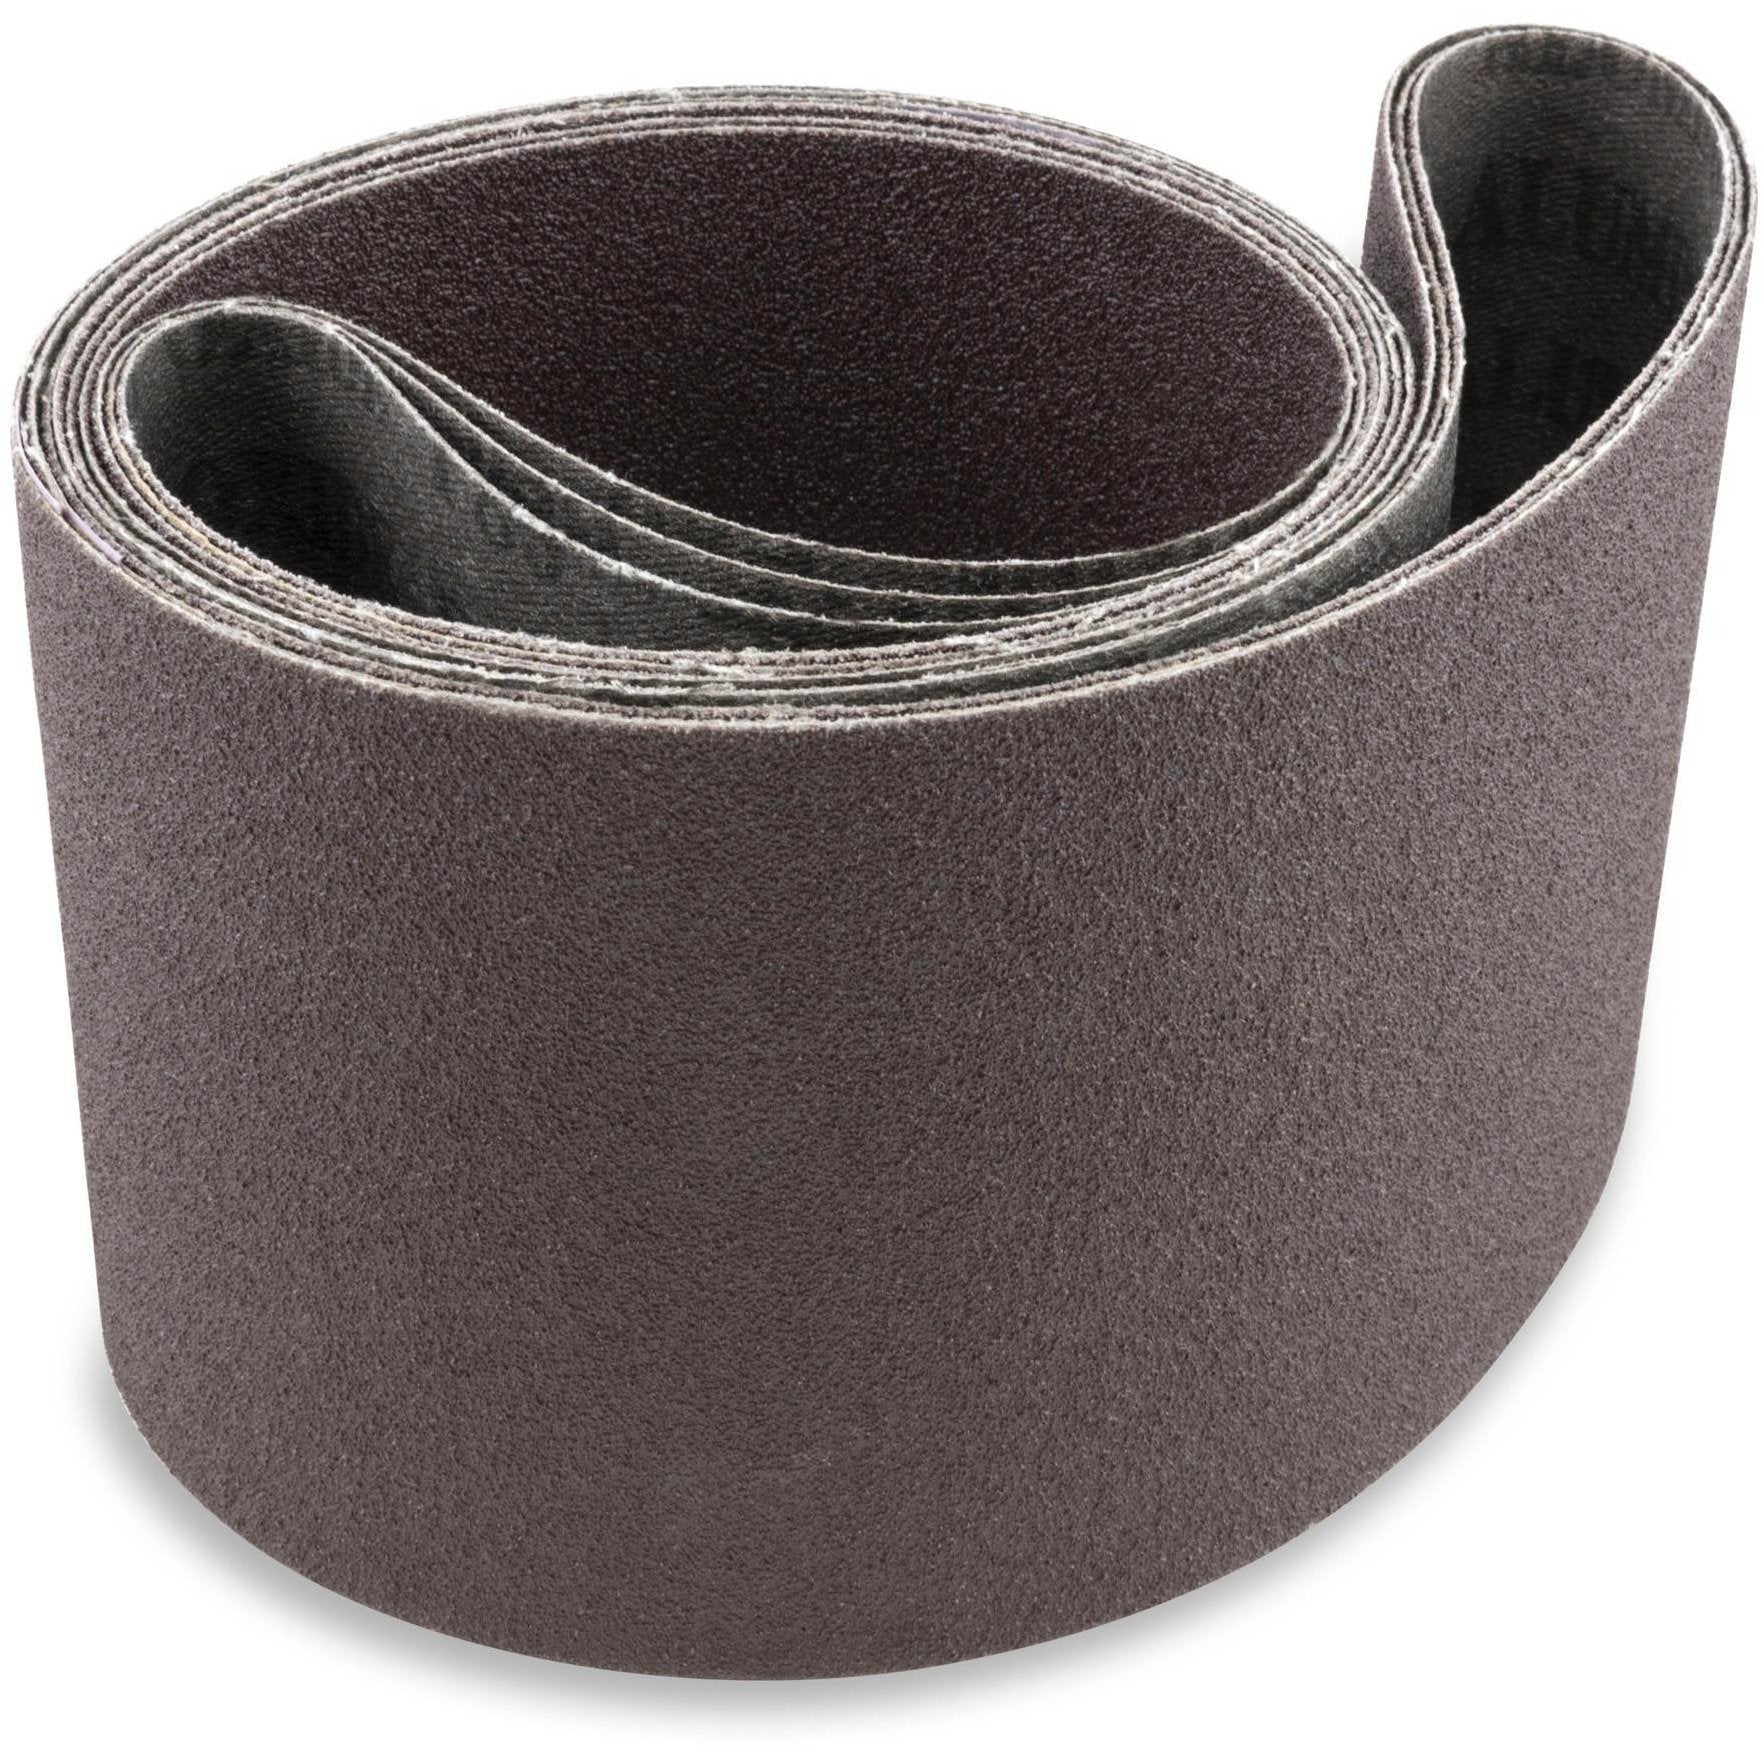 6 X 80 Inch Aluminum Oxide Sanding Belts, 2 Pack - Red Label Abrasives